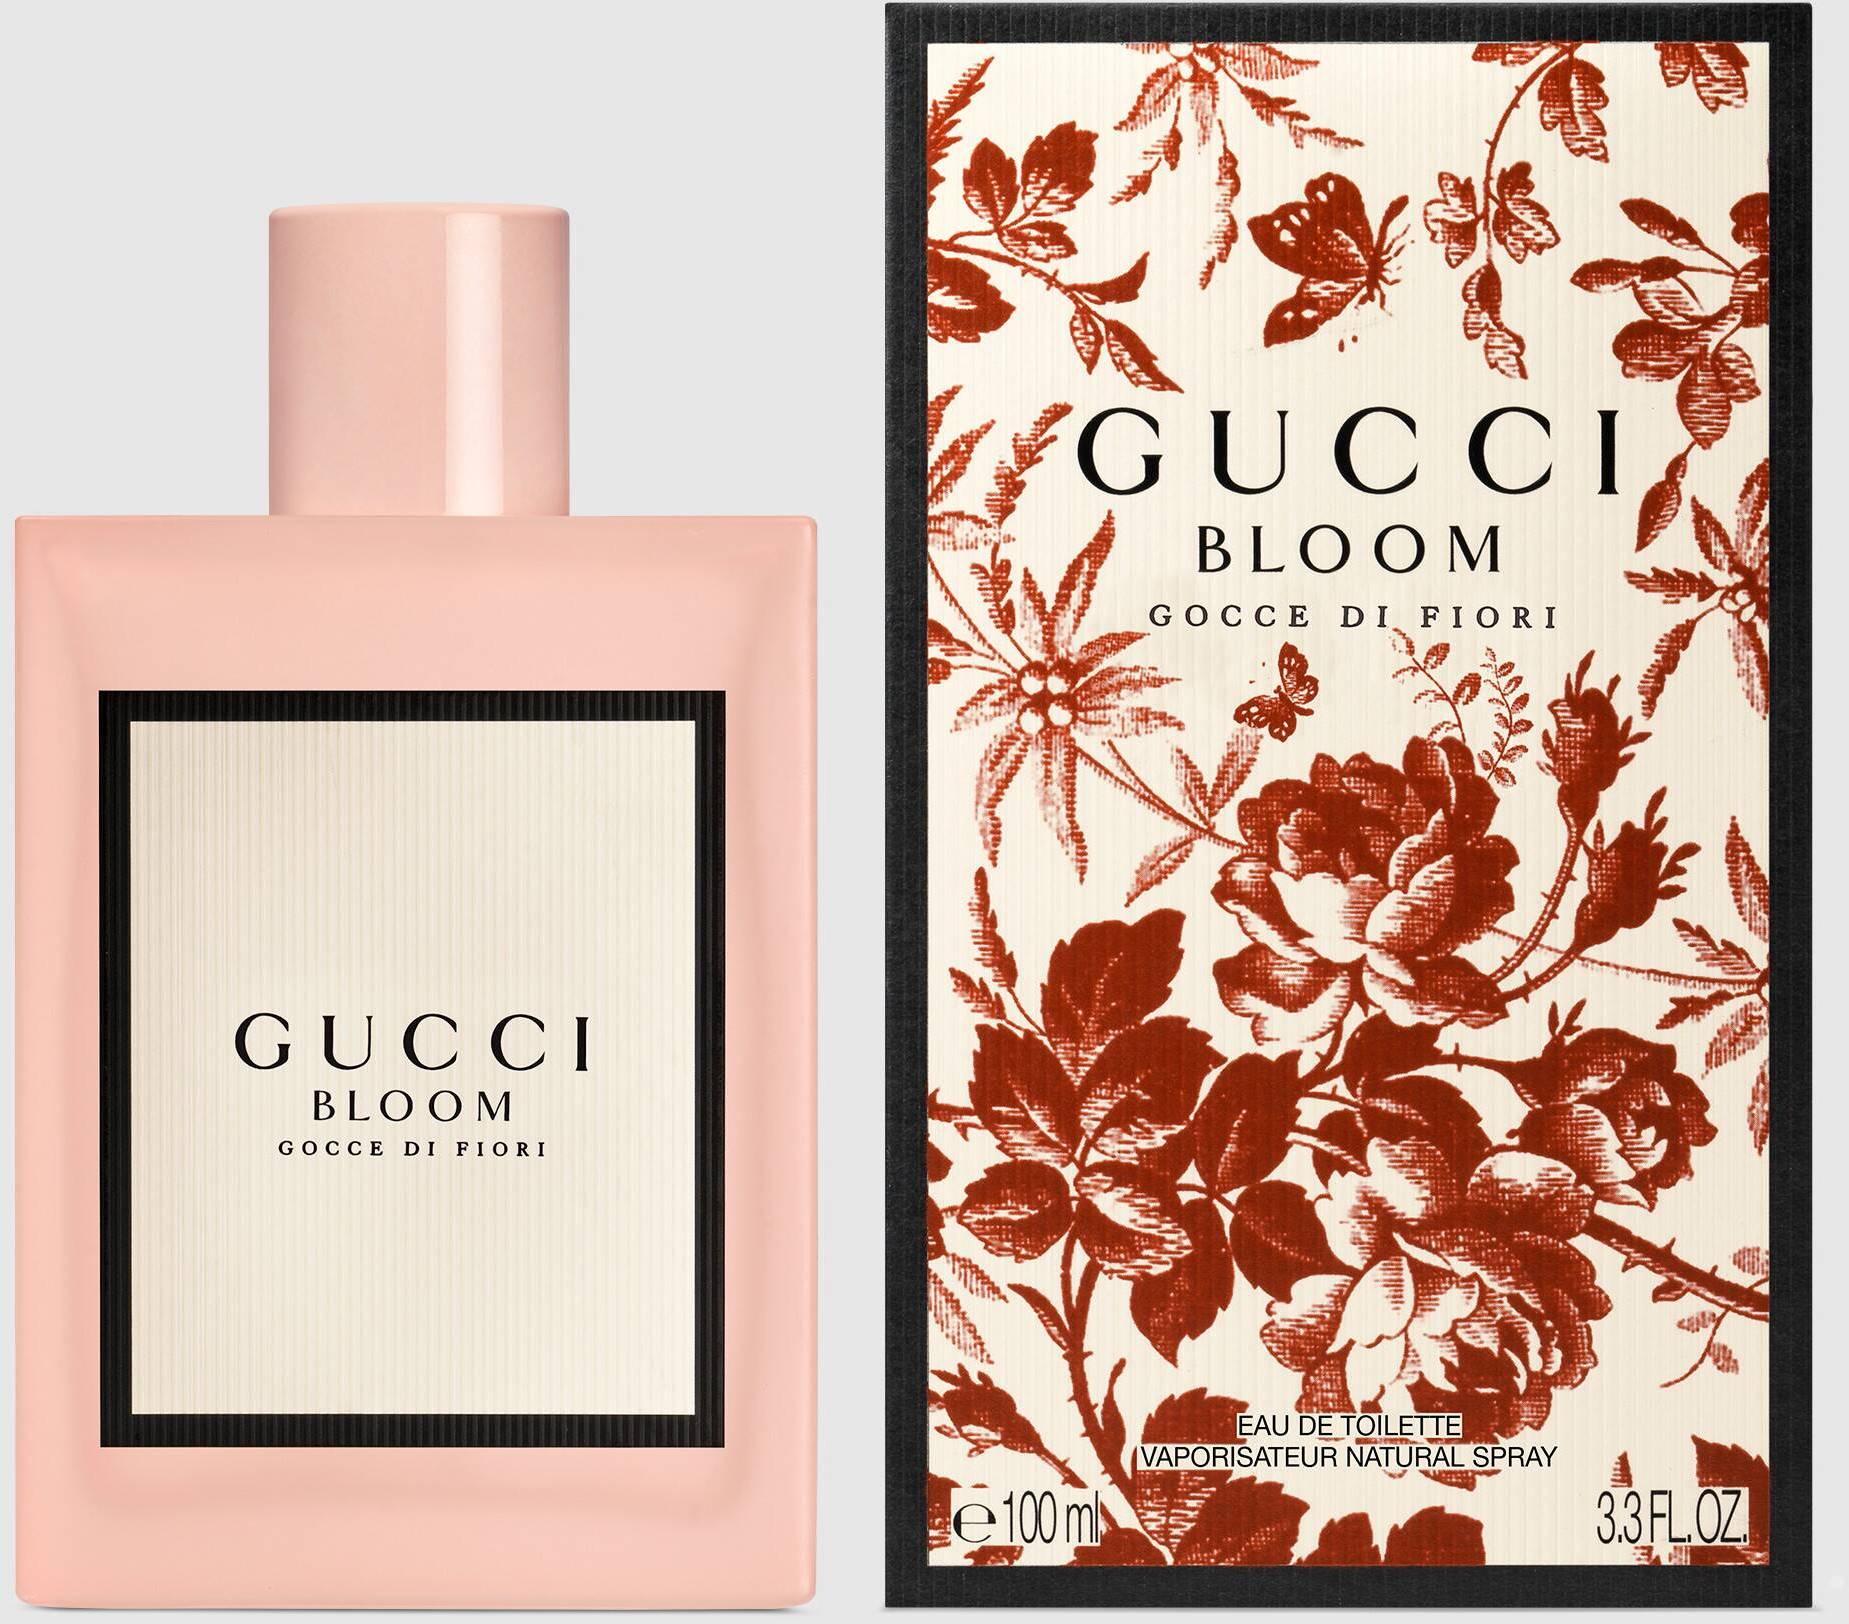 Gucci Bloom Gocce di Fiori Eau de Toilette 100 ml duty-free at airport Boryspil